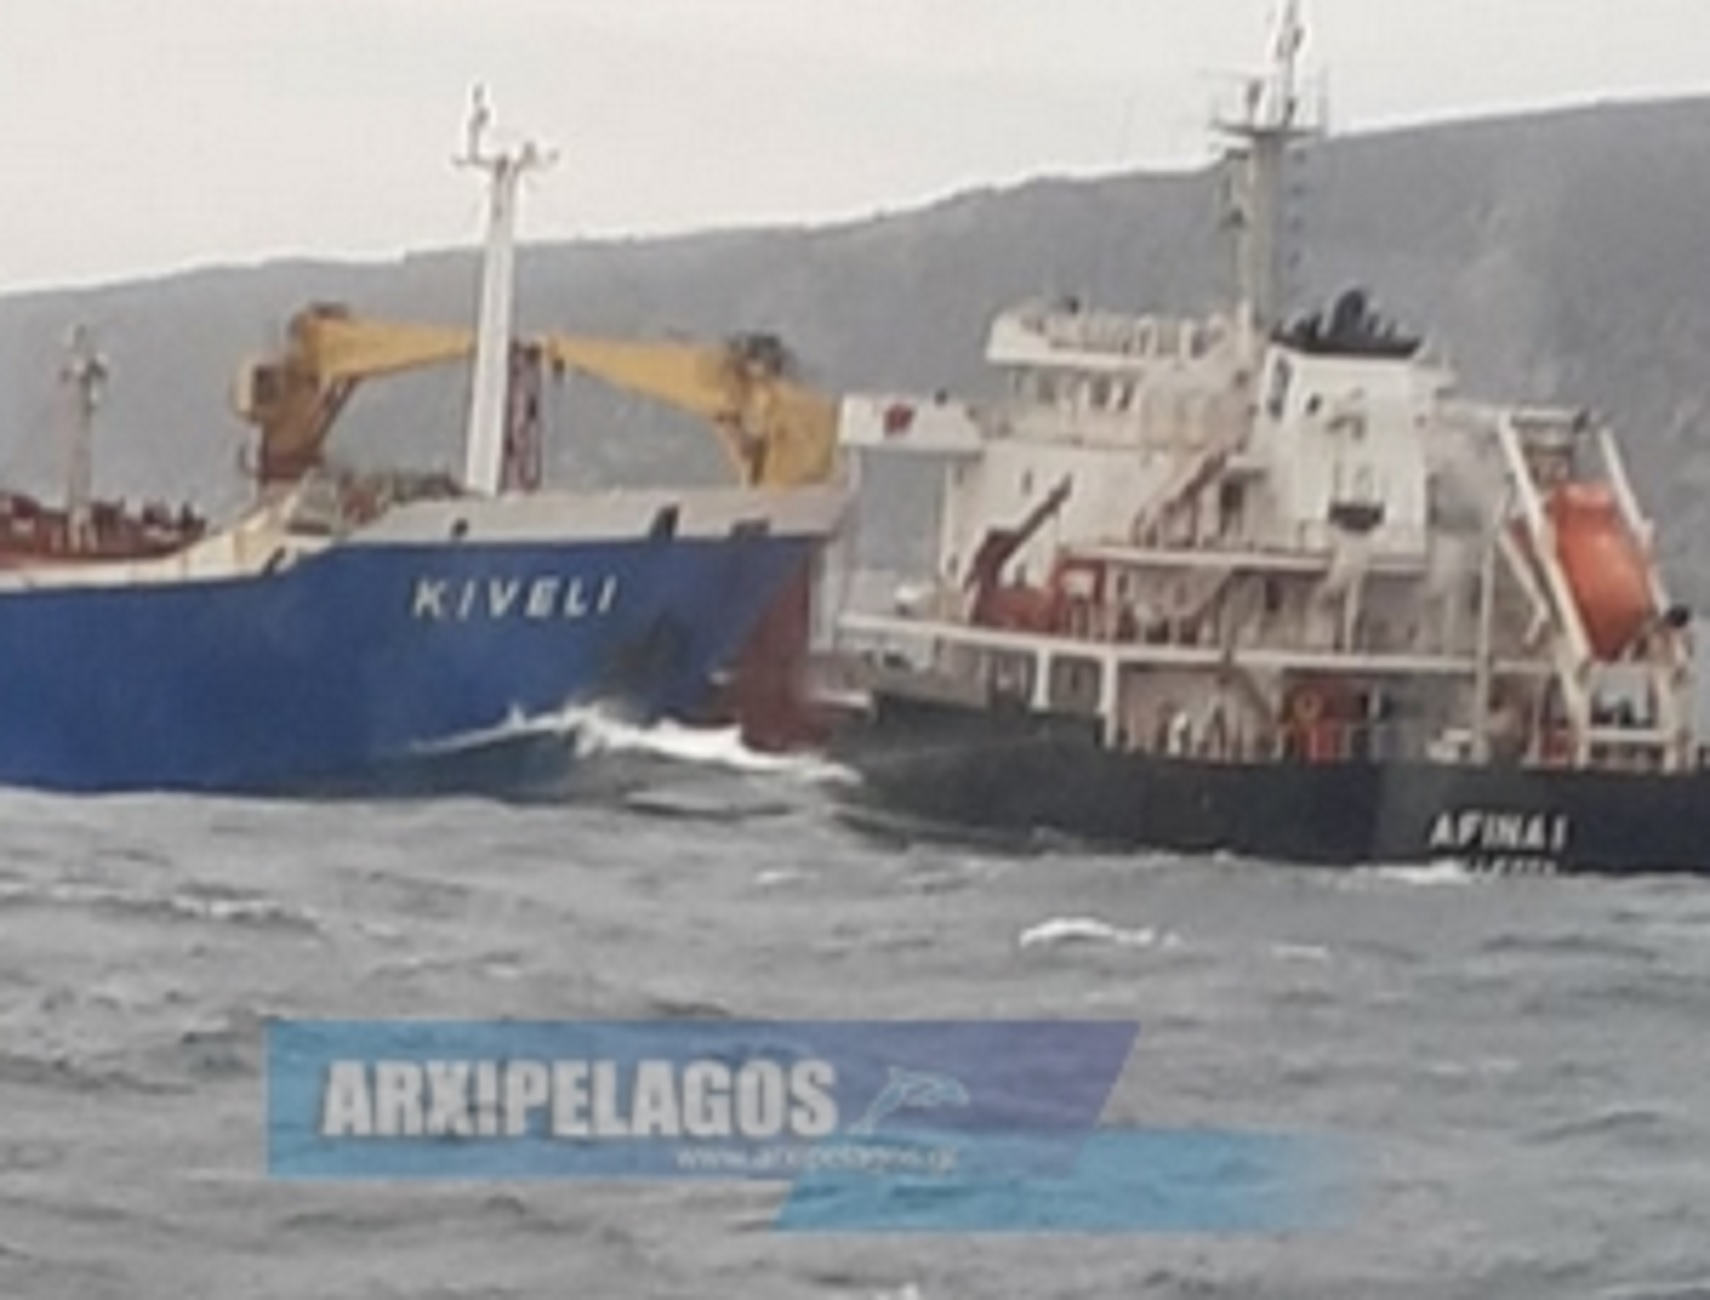 Κύθηρα: Οι πρώτες εικόνες από τη σύγκρουση των δύο πλοίων – Γρίφος οι συνθήκες του ατυχήματος (pics)